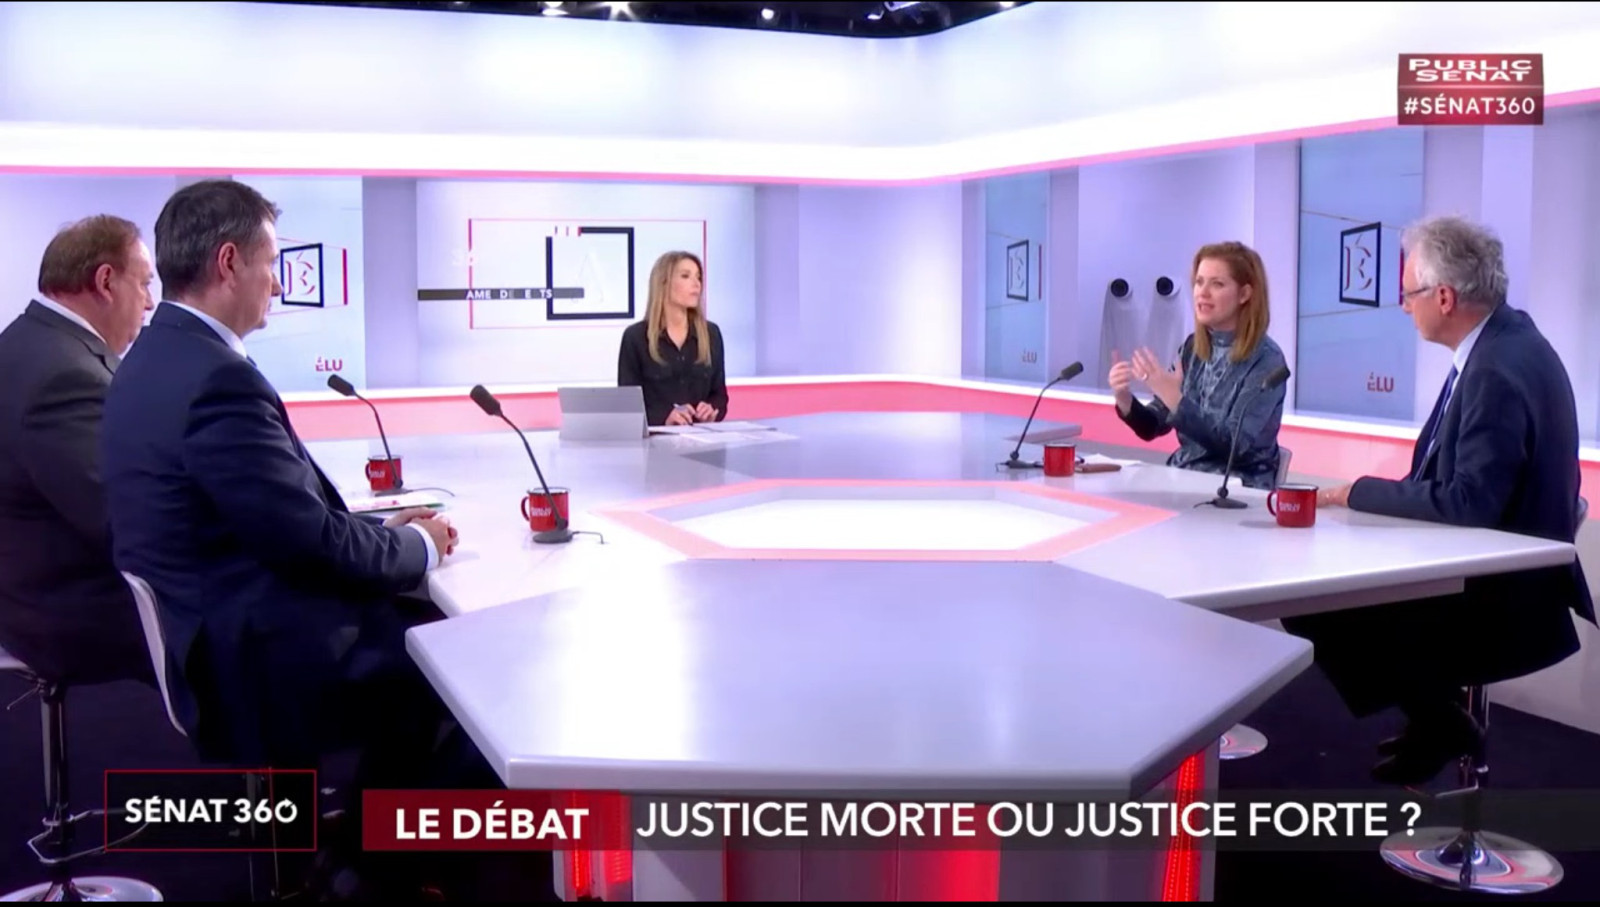 UNITE MAGISTRATS participe aux débats sur Public Sénat dans l'émission SENAT 360 : "Justice morte ou justice forte ?" - Syndicat Unité Magistrats SNM FO